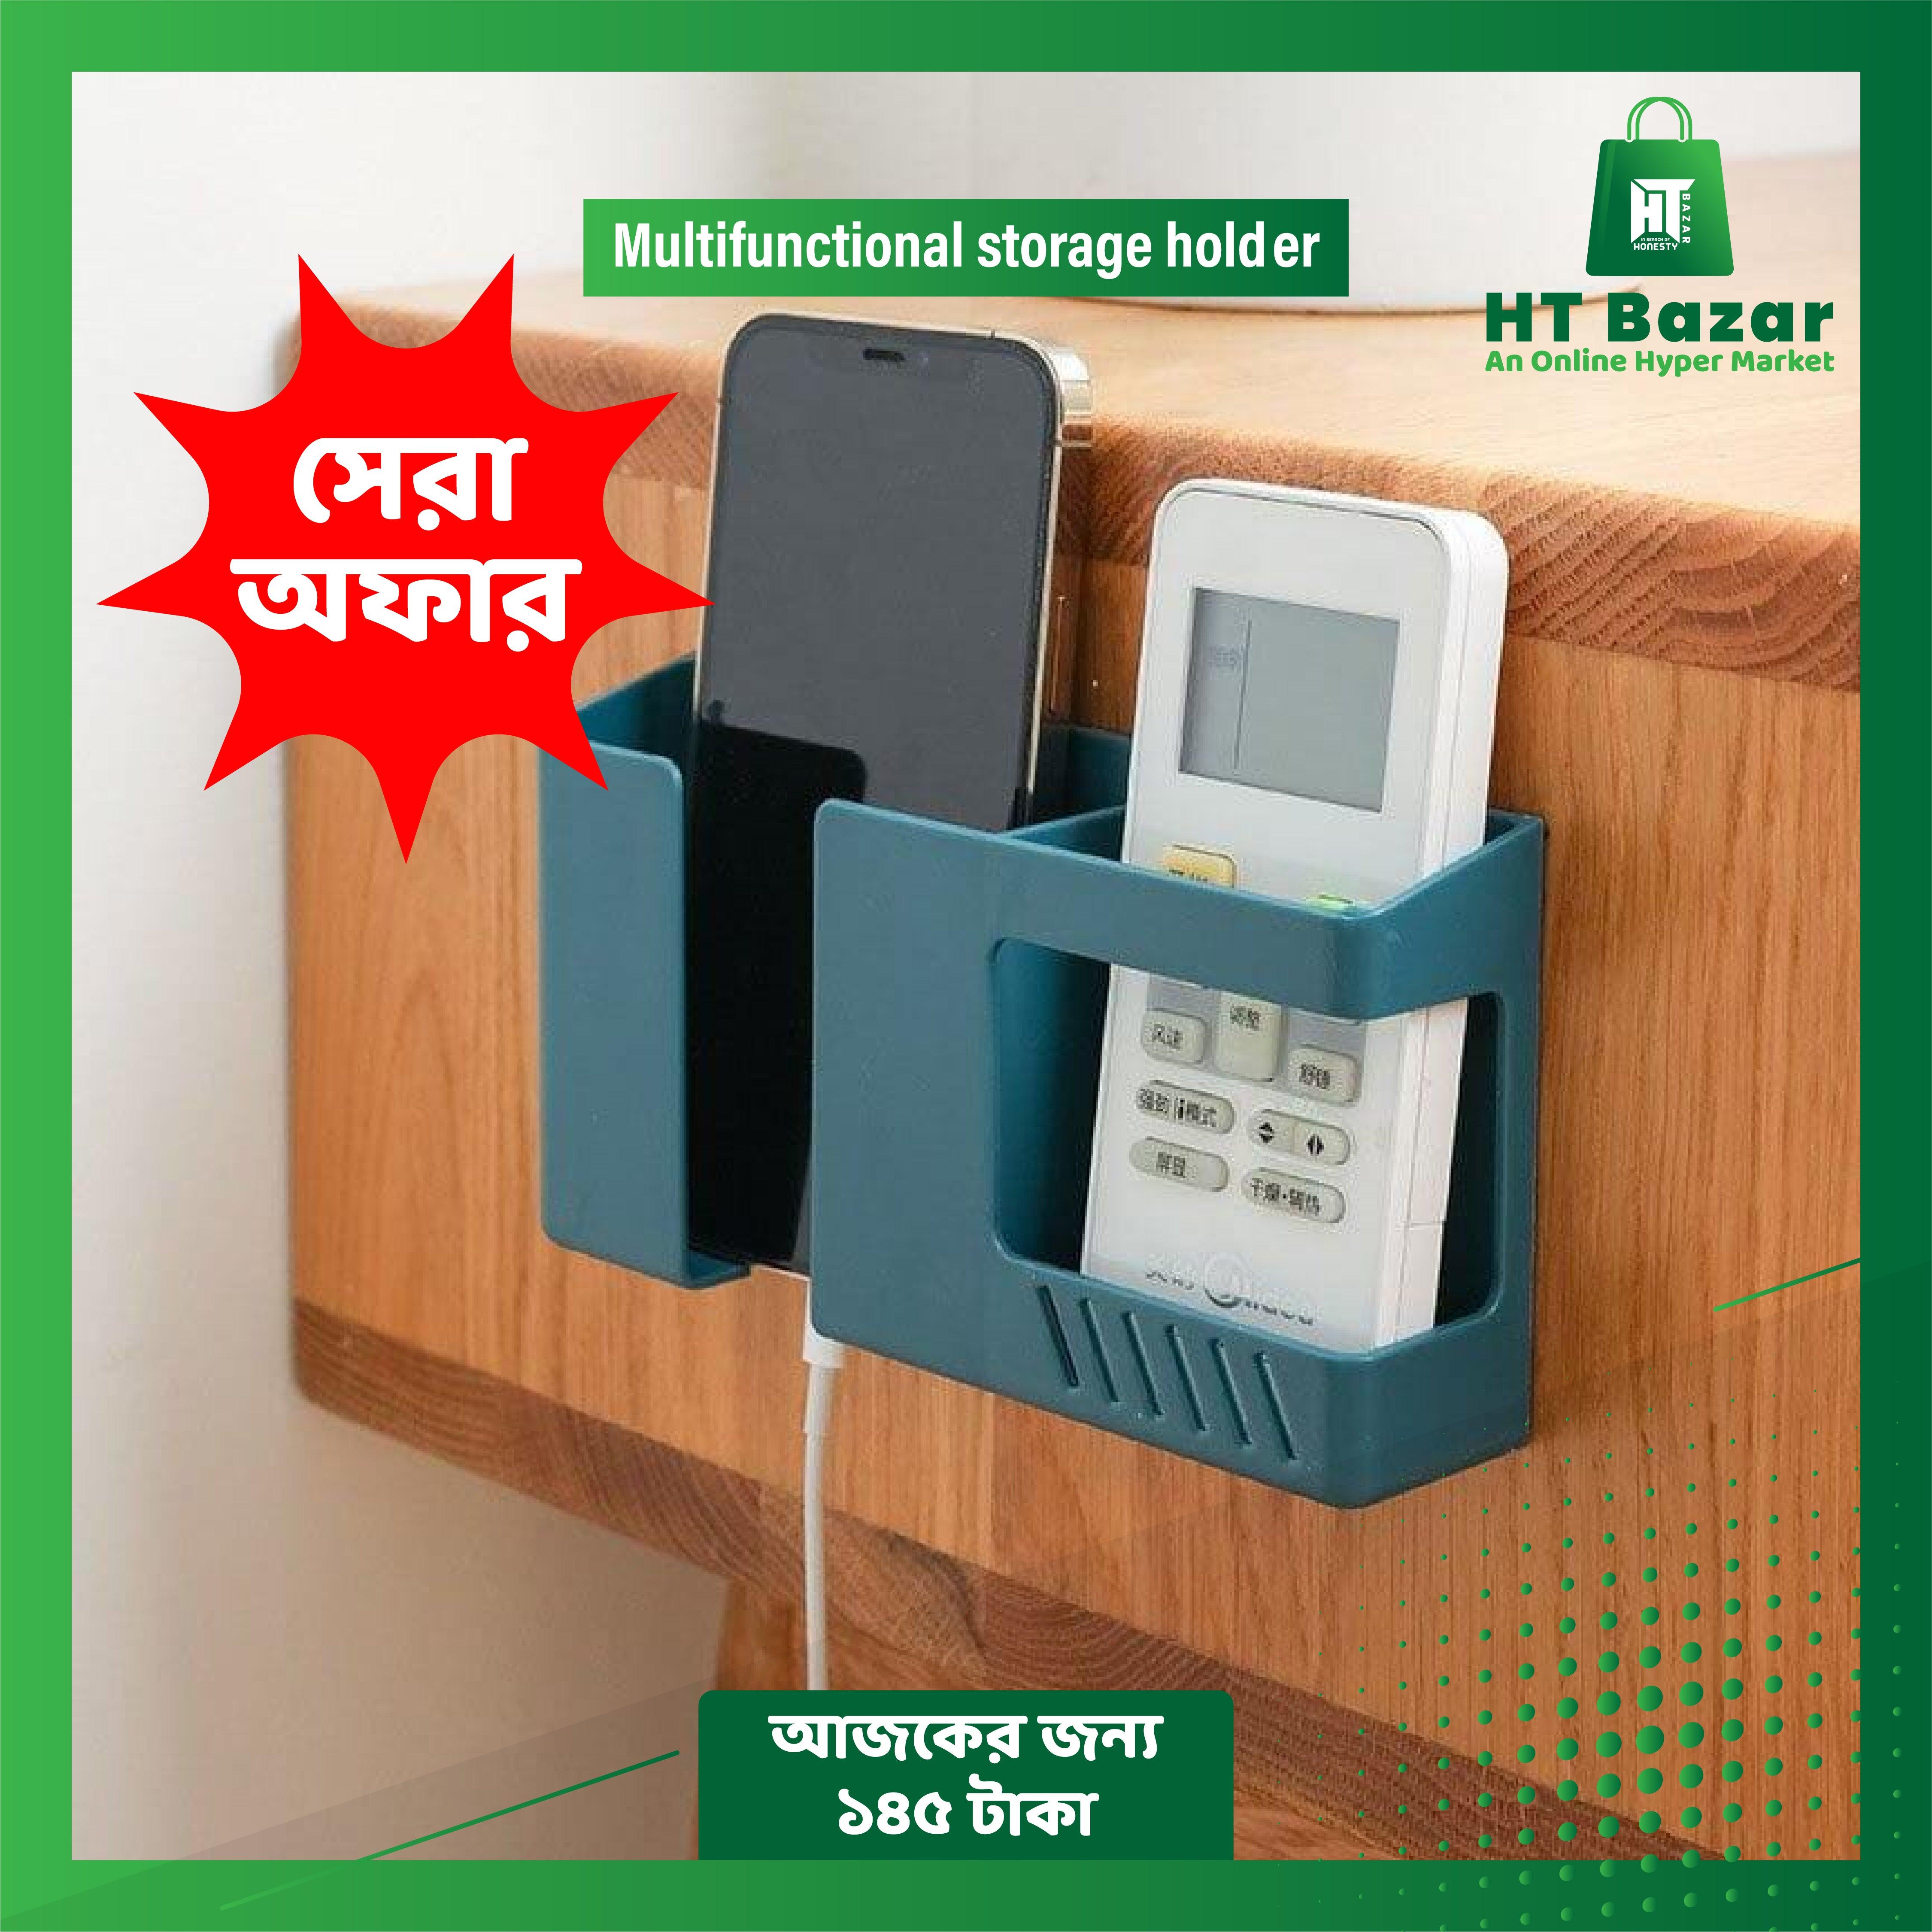 Multifunctional storage holder - HT Bazar